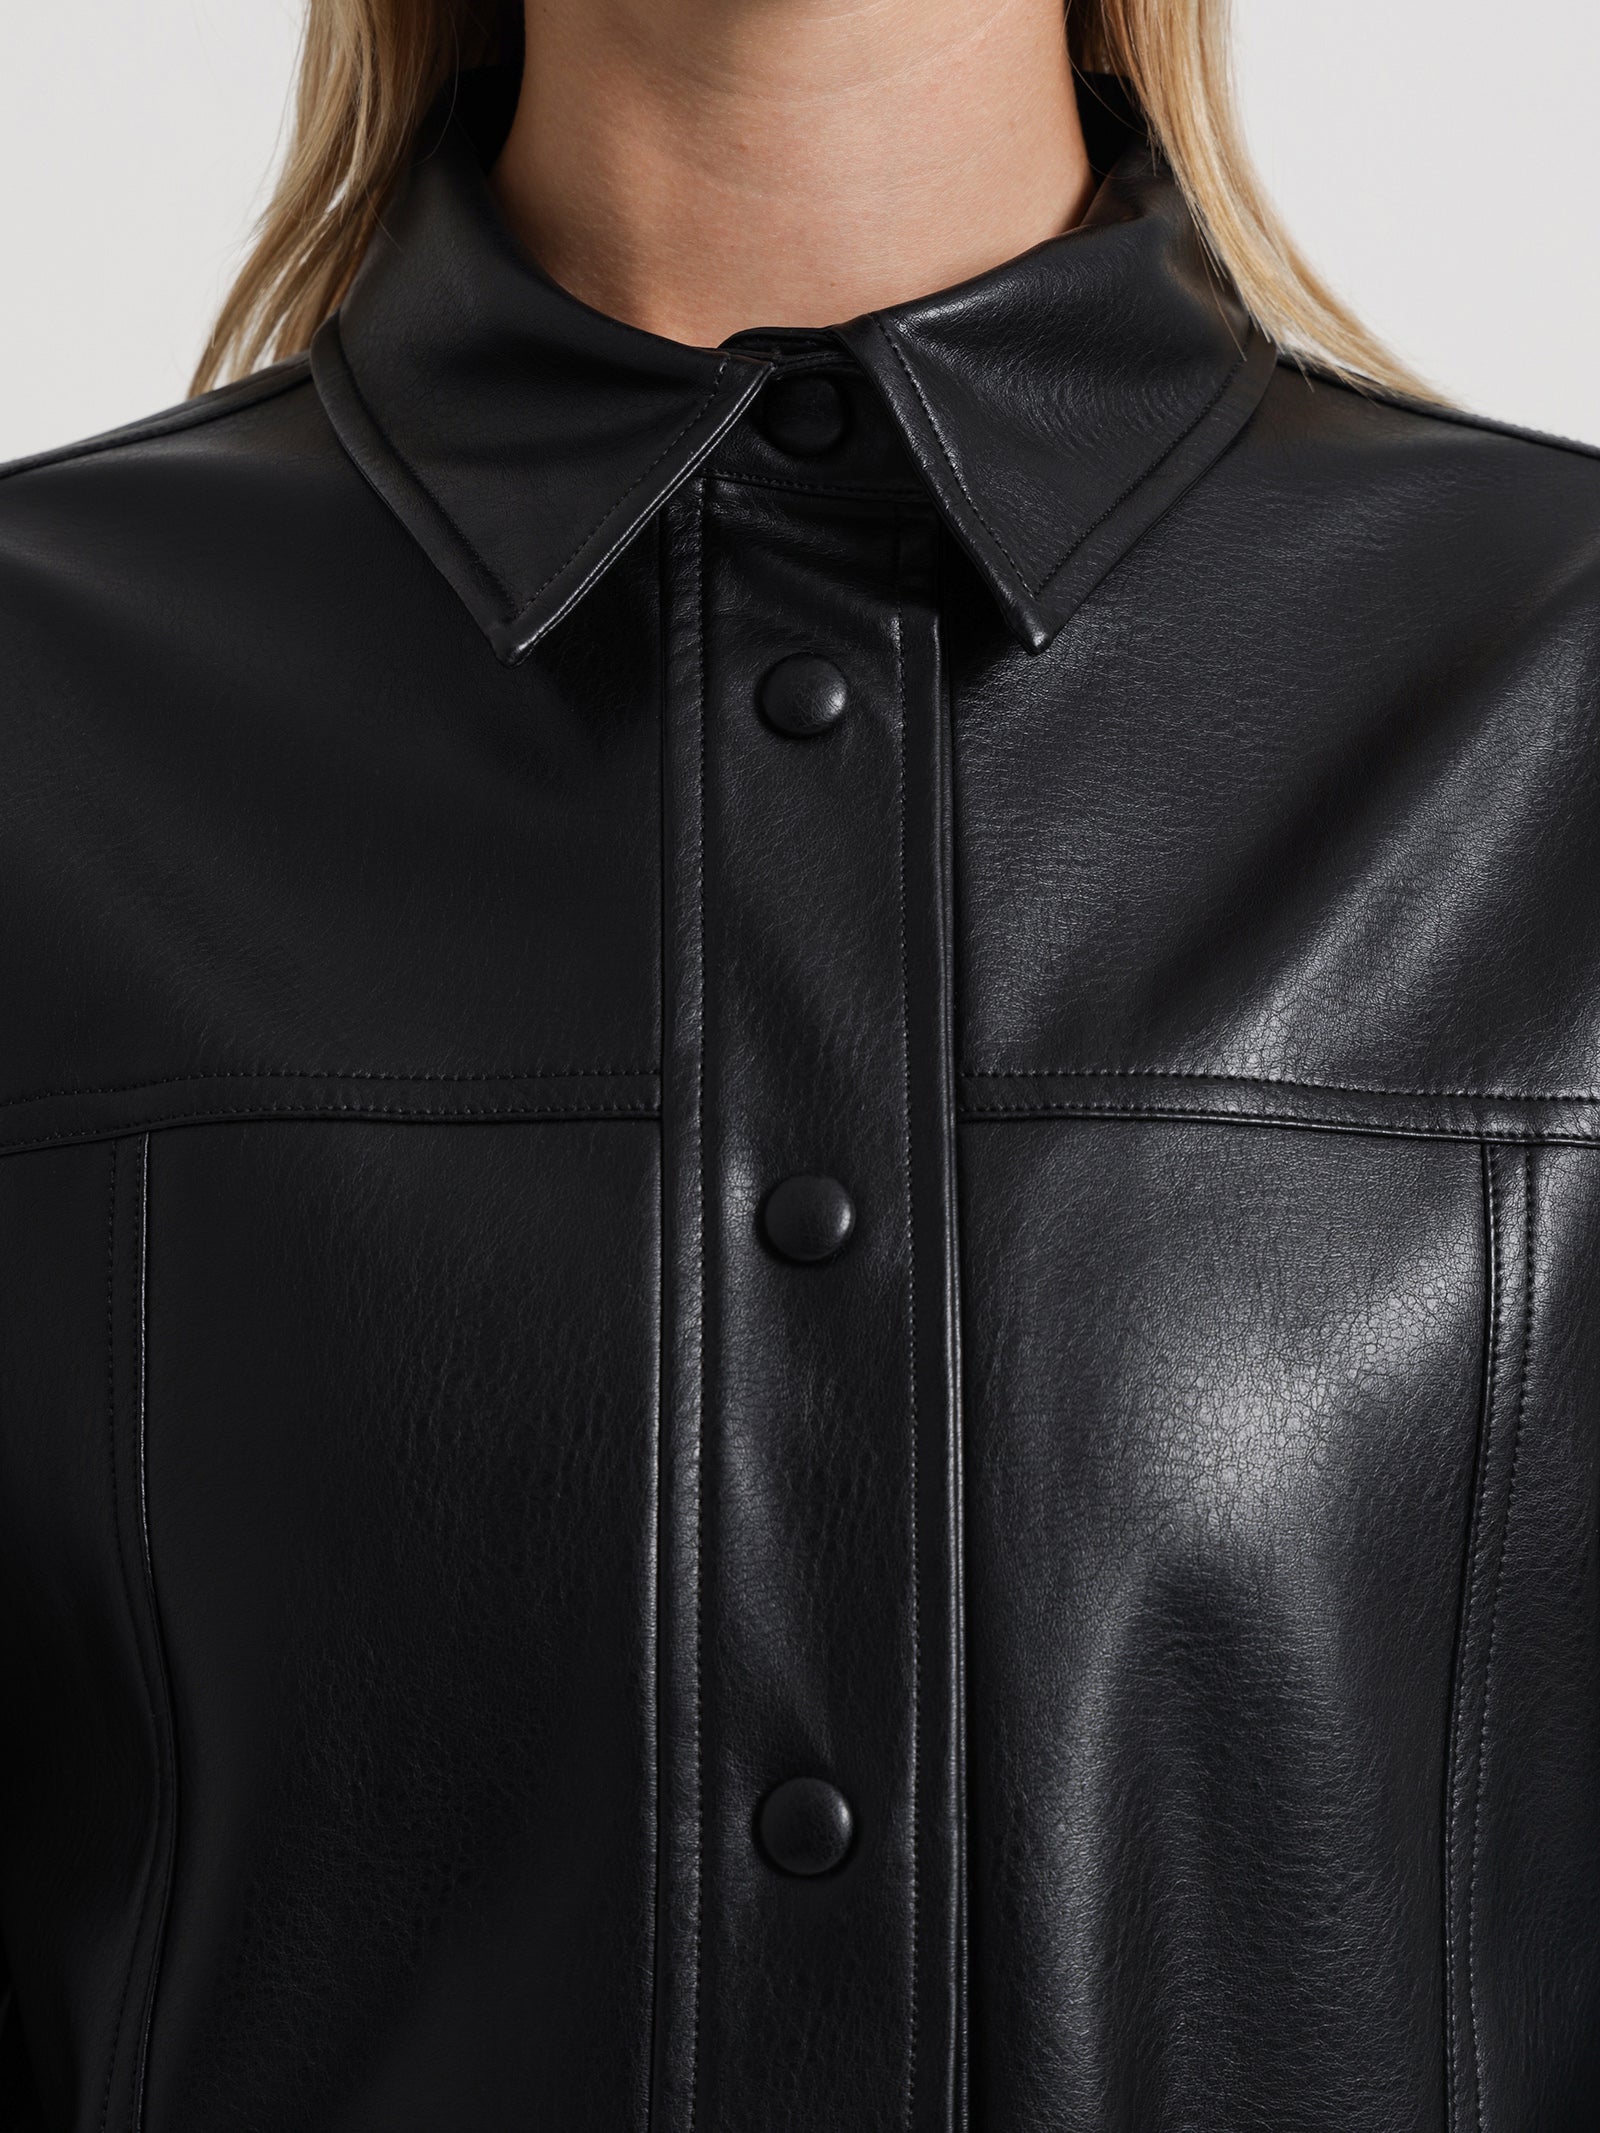 Topshop + Black Faux Leather Tie Shirt